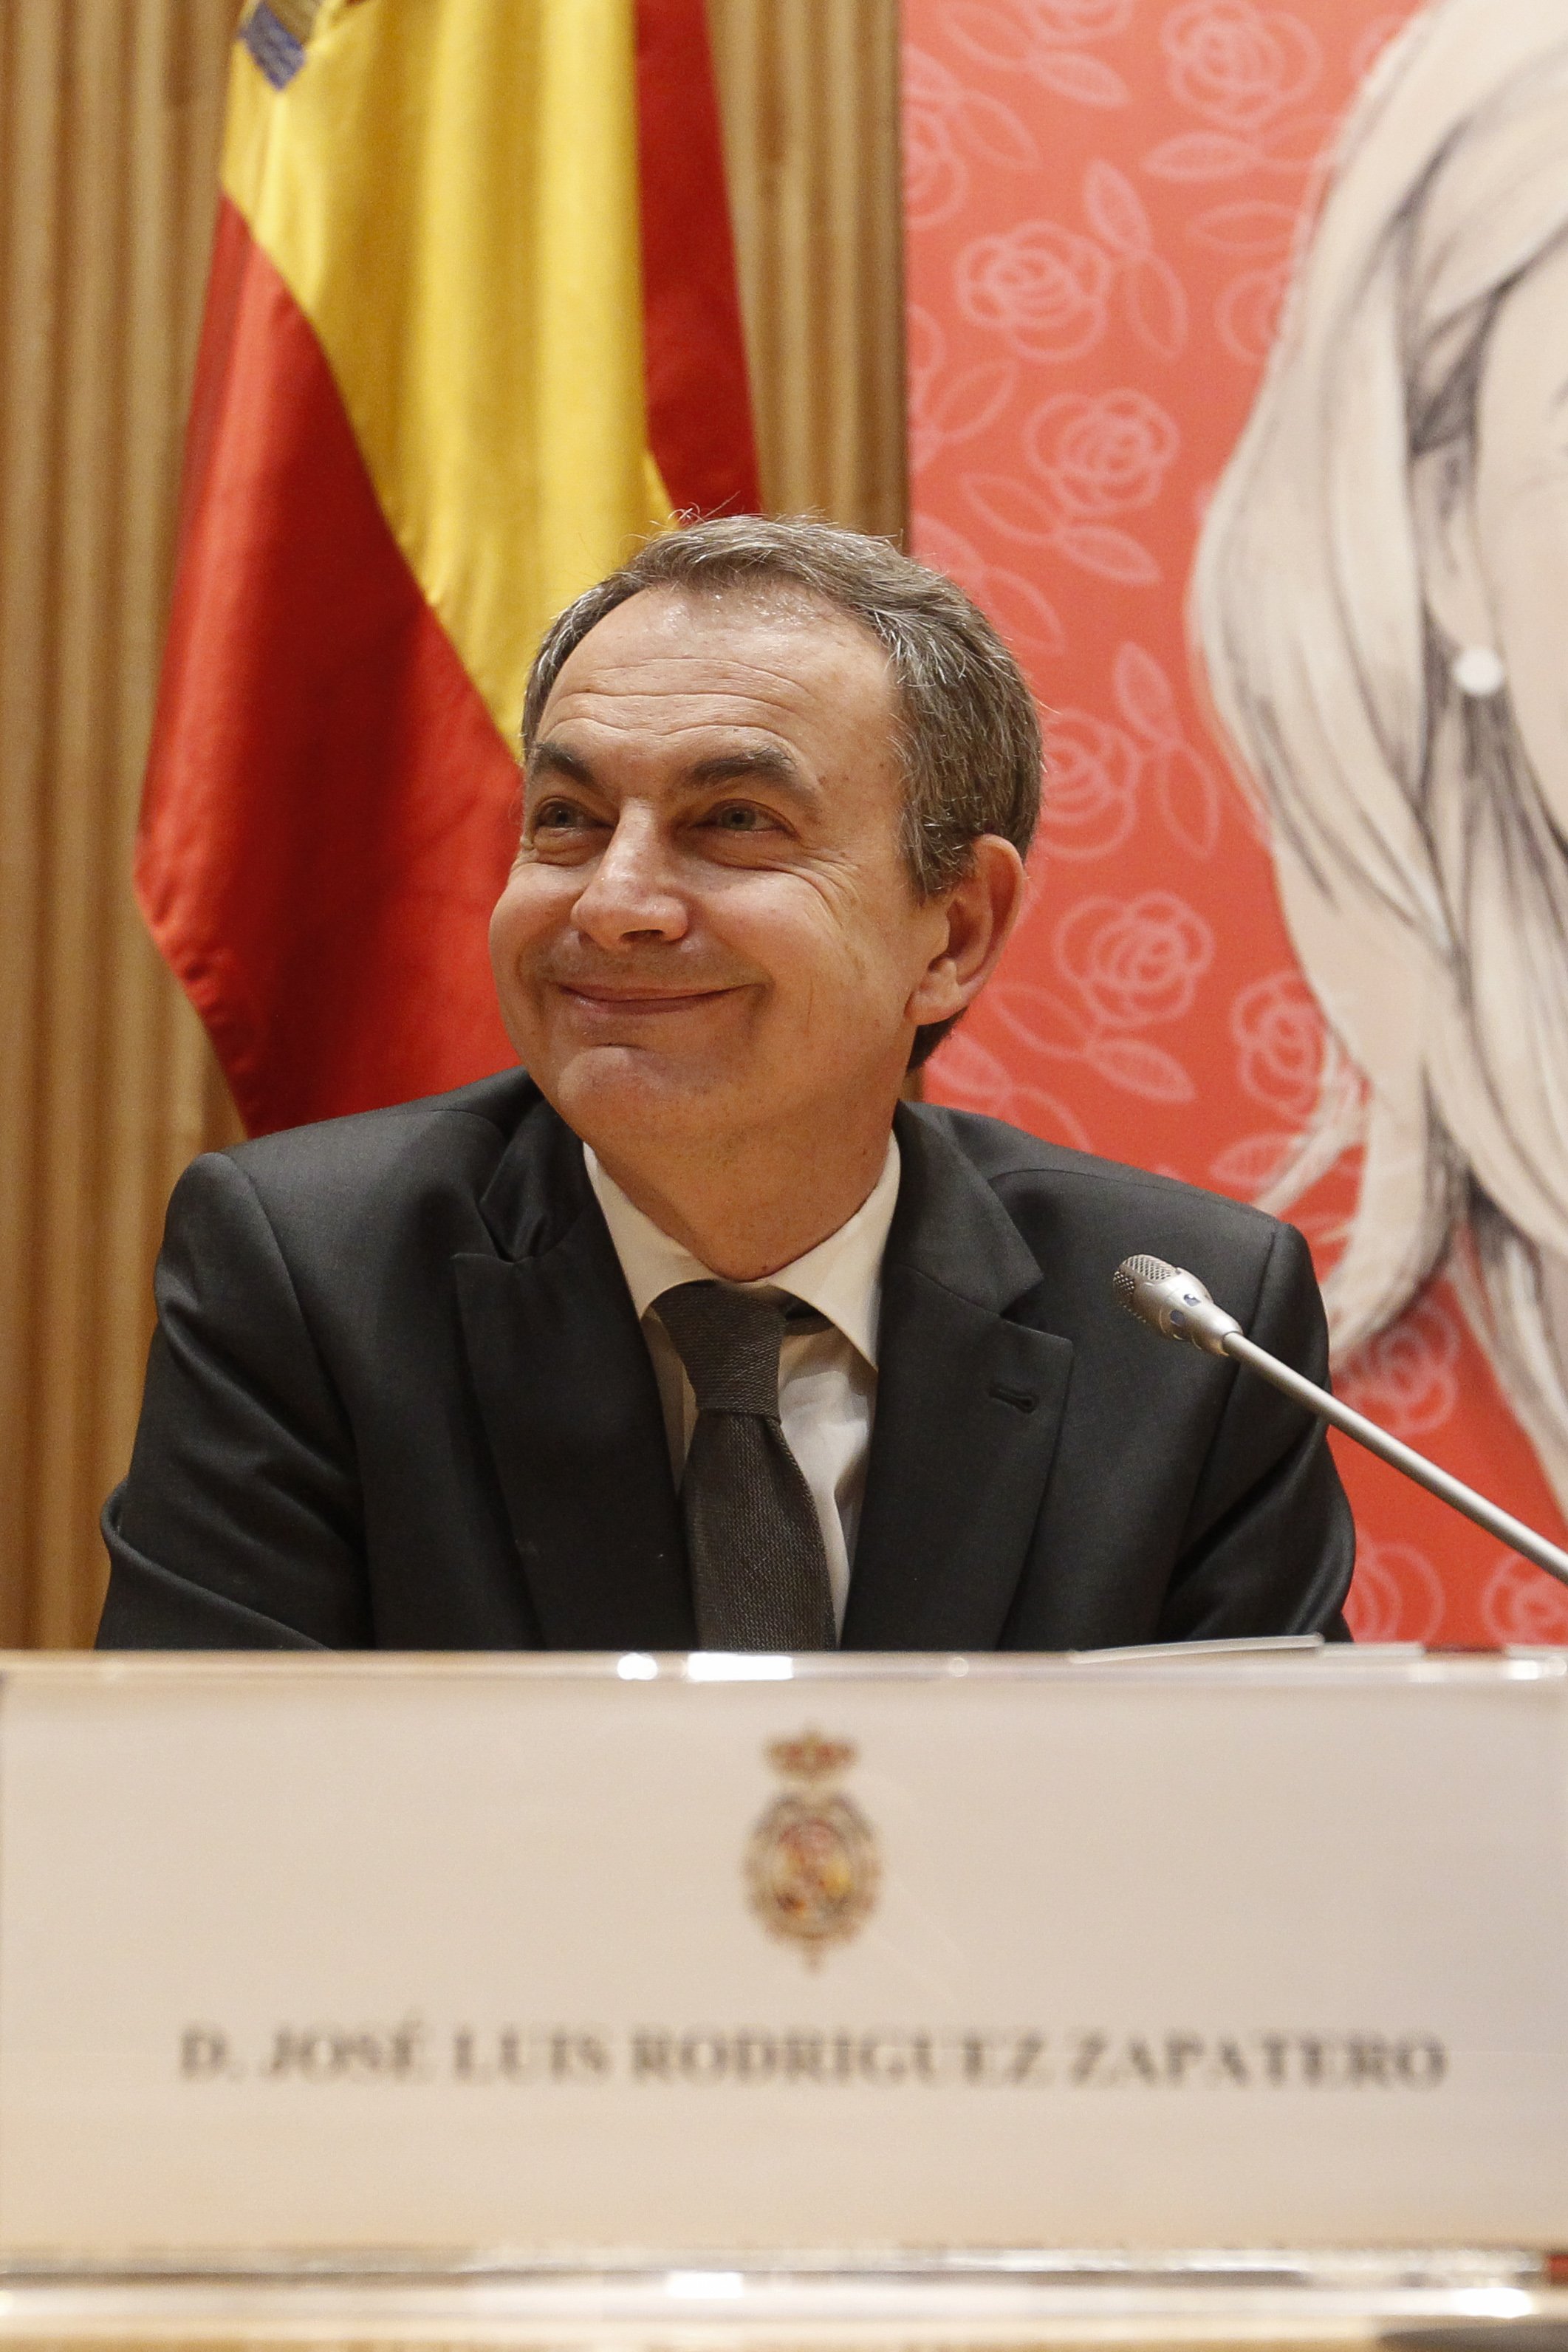 El polémico chalet de lujo que Zapatero ha comprado en Madrid (con rebaja del 50%)